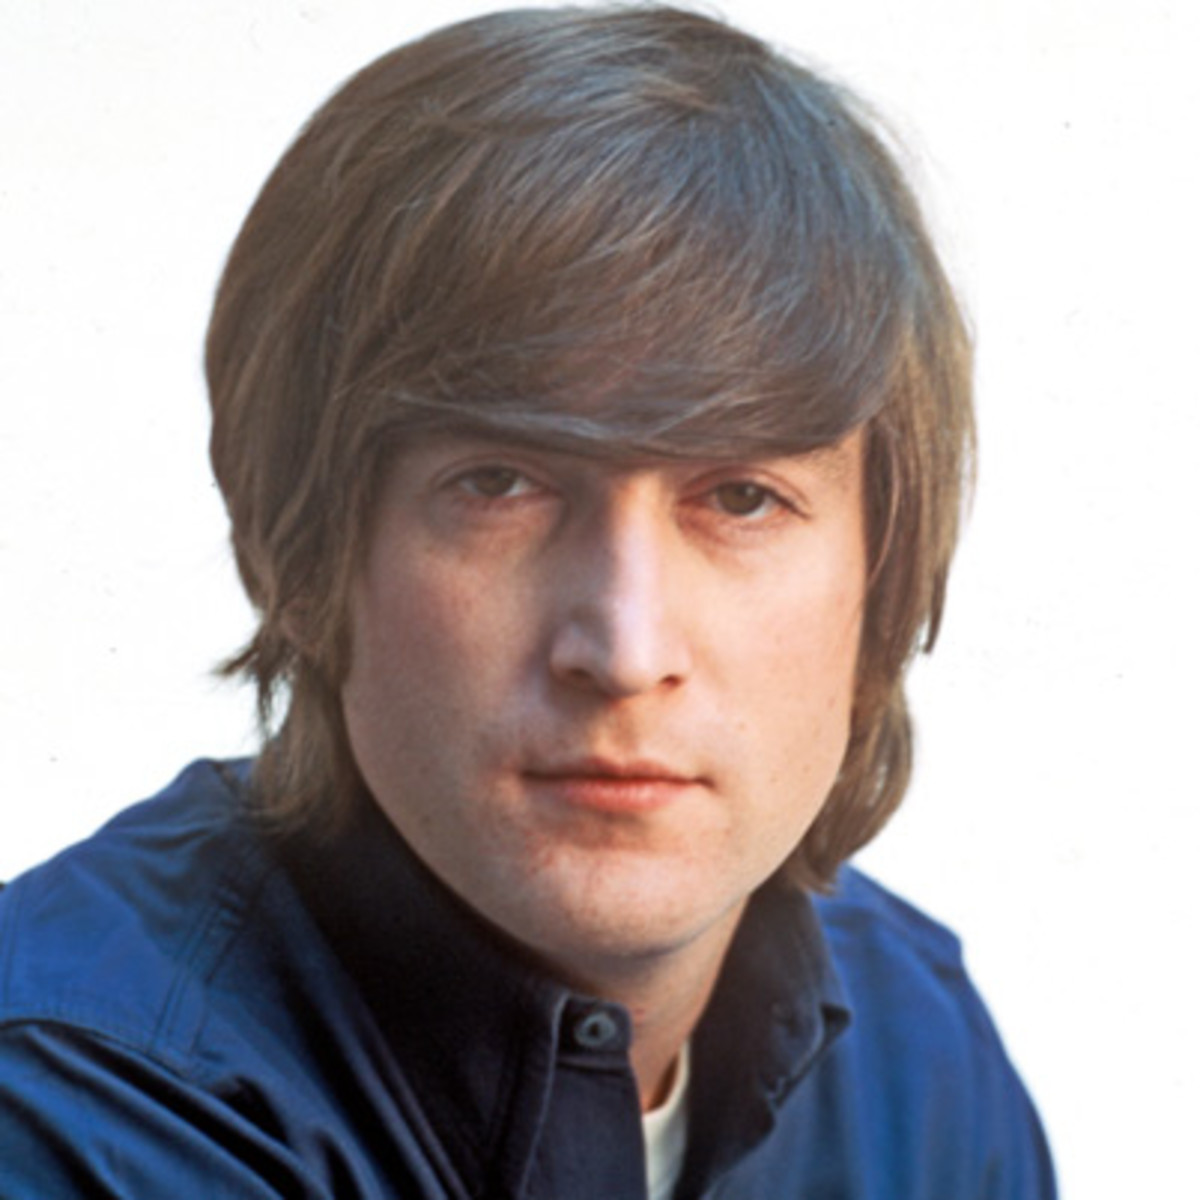 John Lennon #4